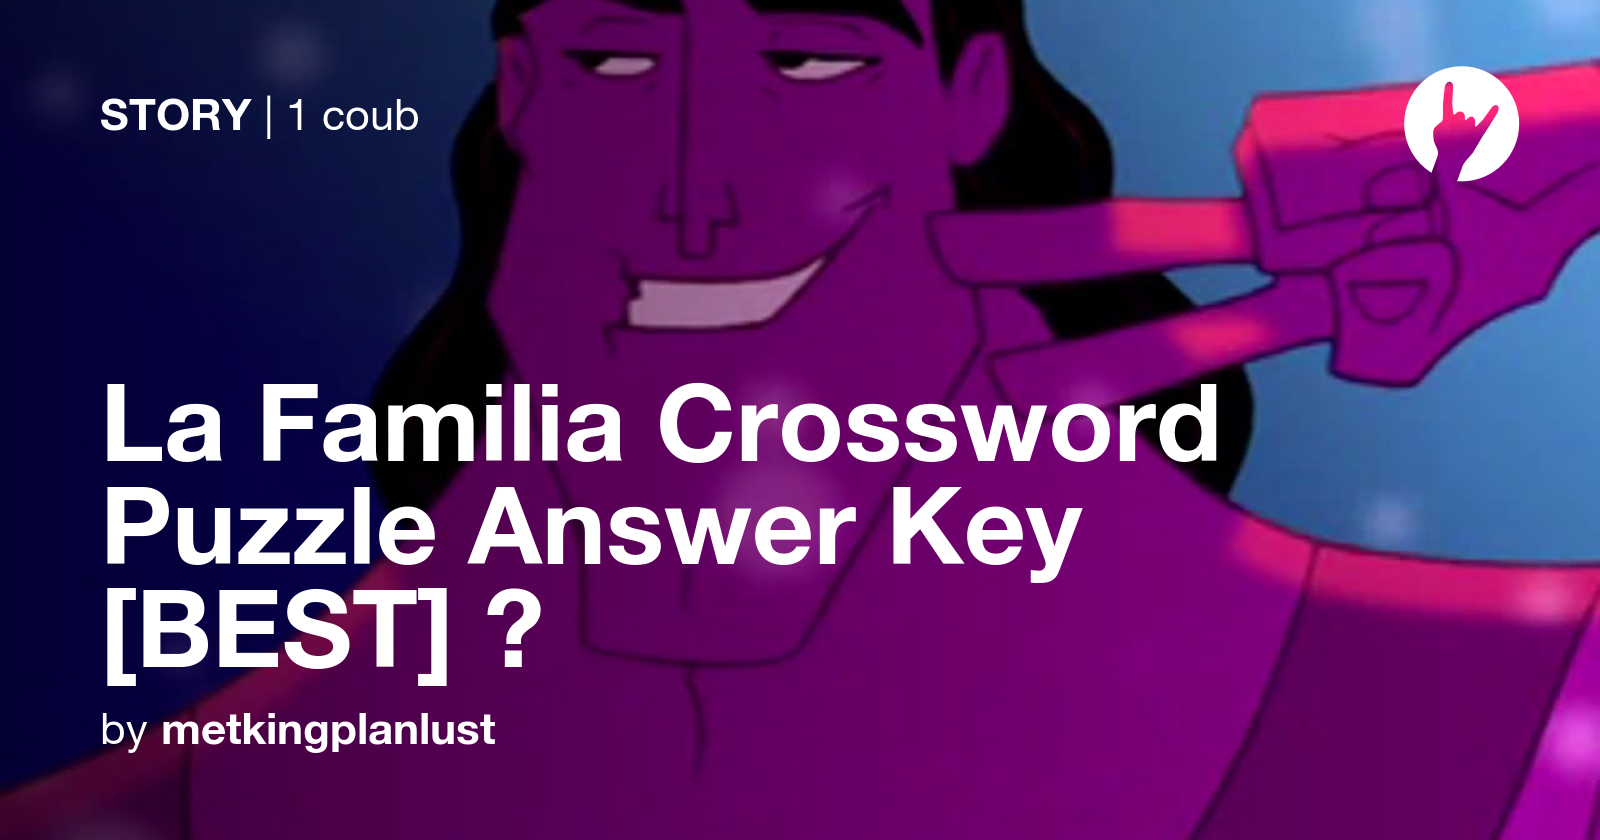 La Familia Crossword Puzzle Answer Key BEST 💻 Coub